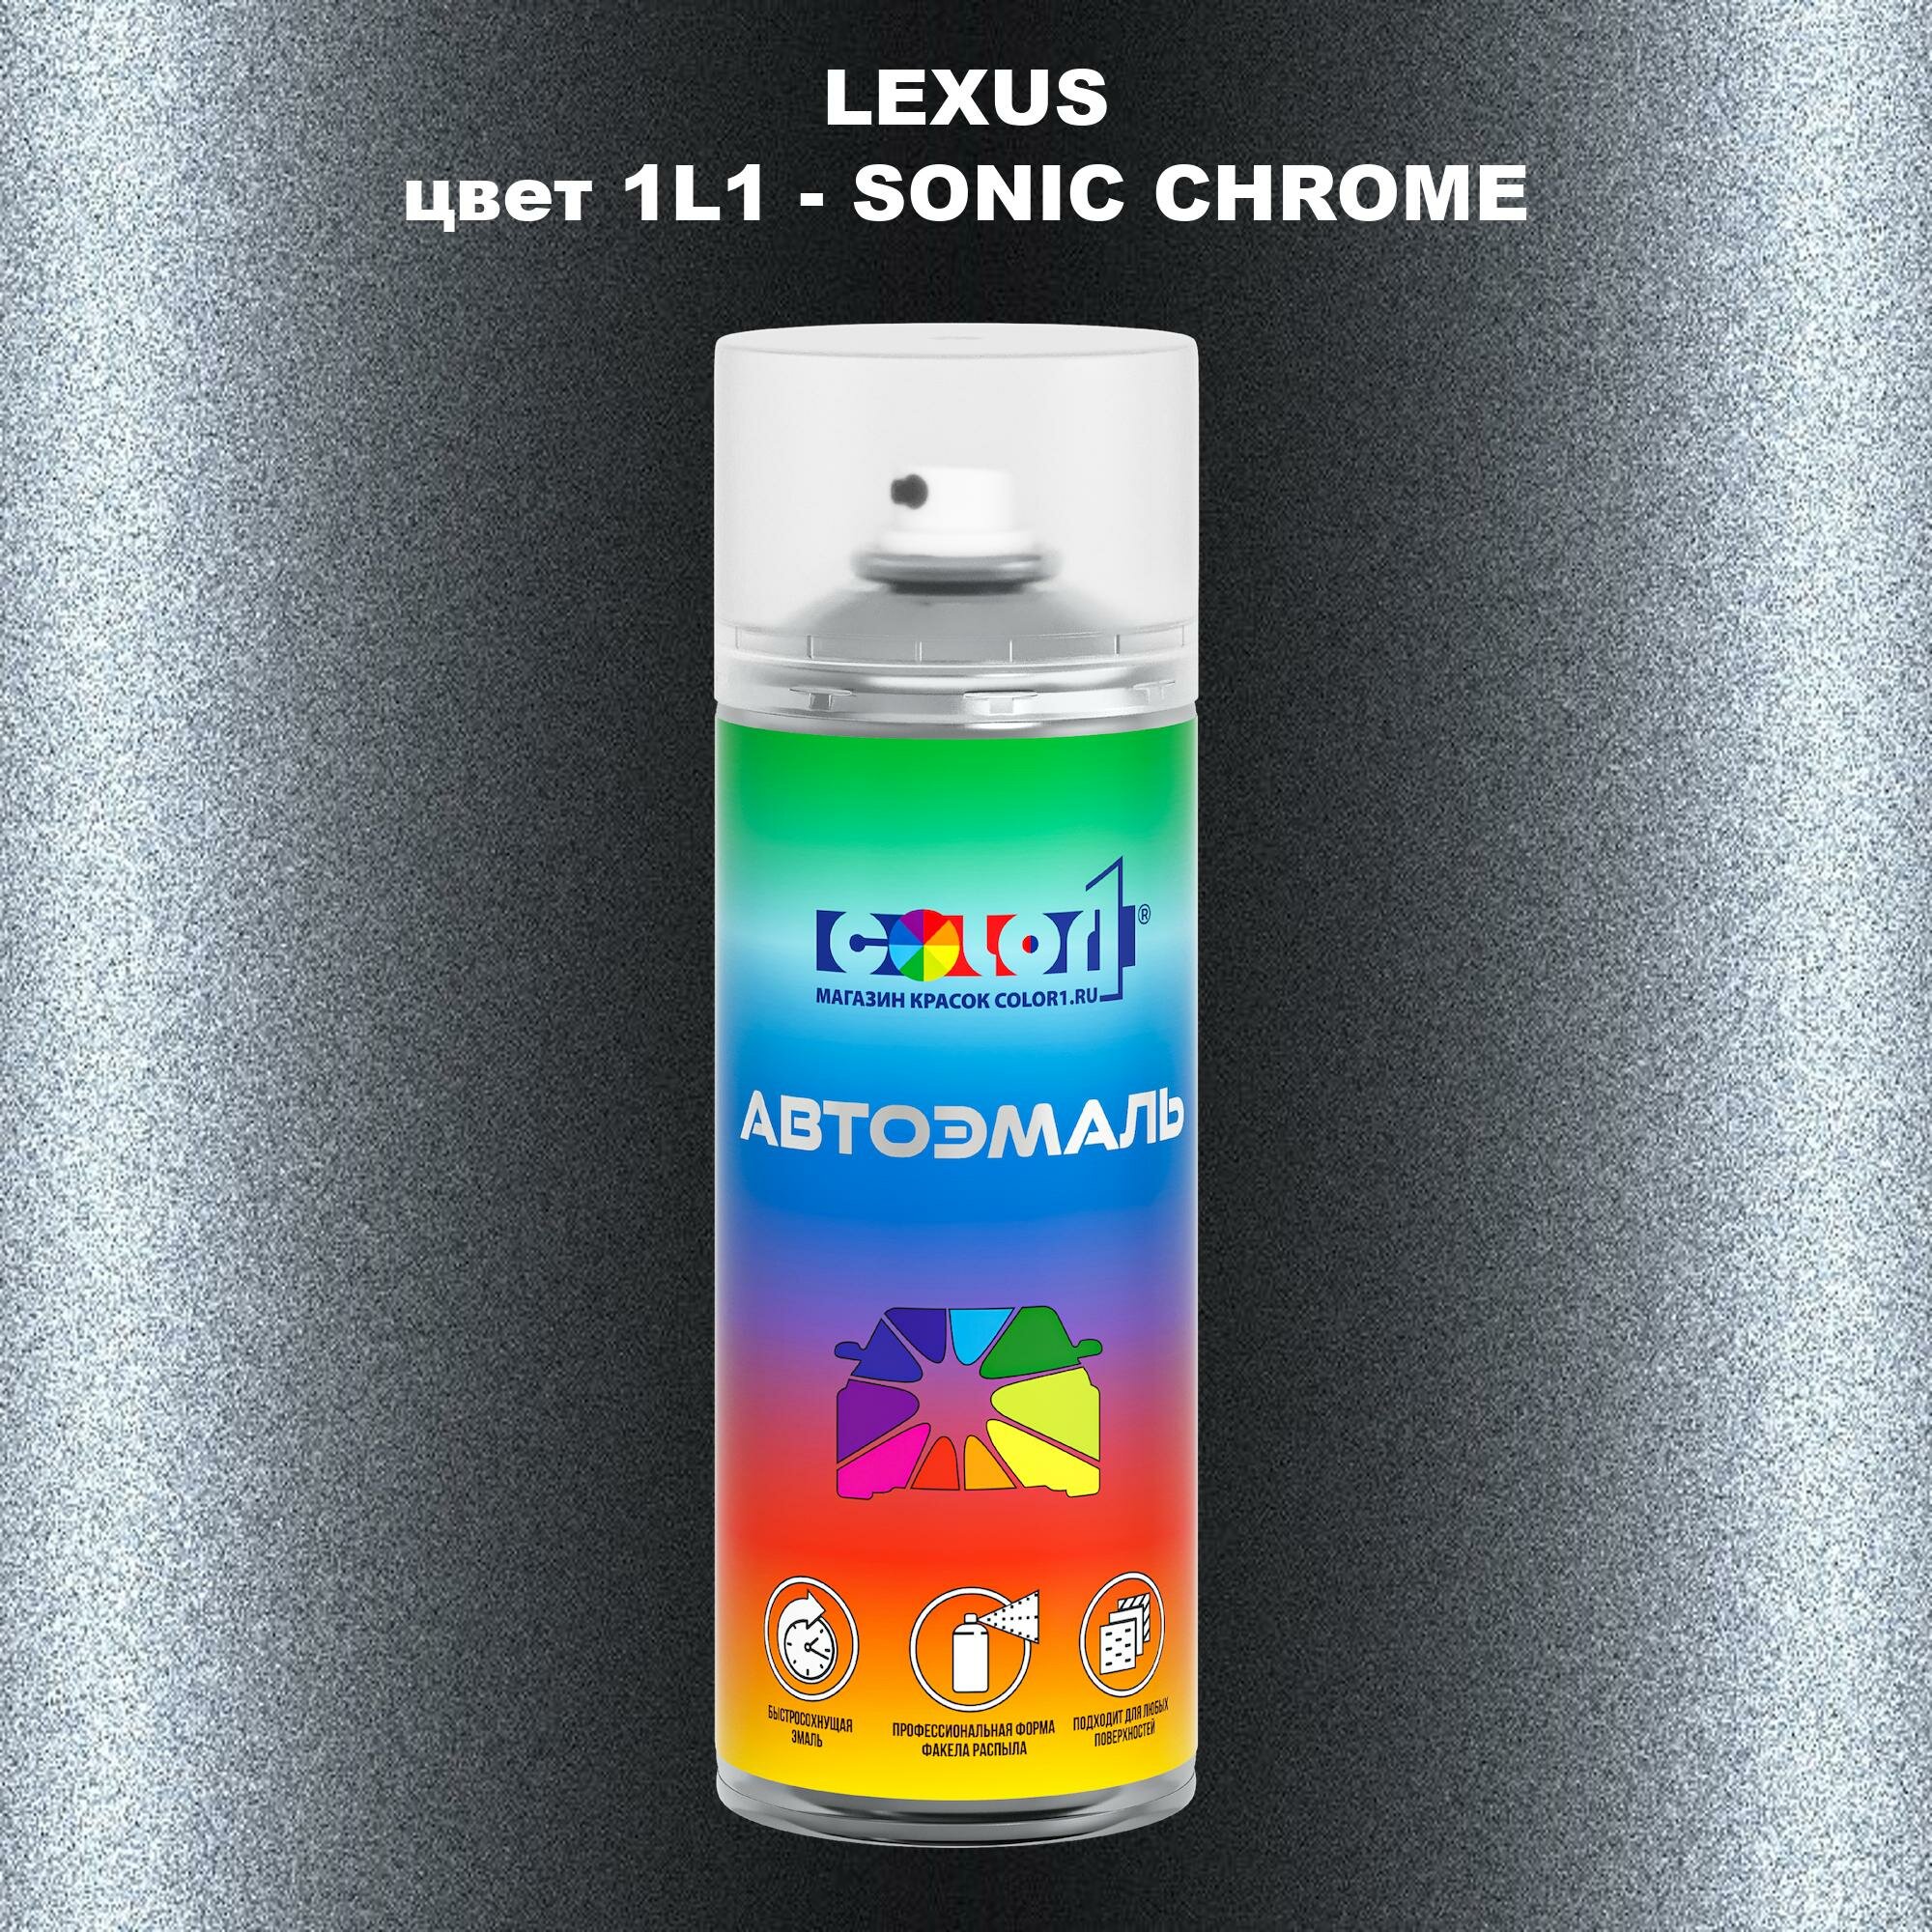 Аэрозольная краска COLOR1 для LEXUS, цвет 1L1 - SONIC CHROME